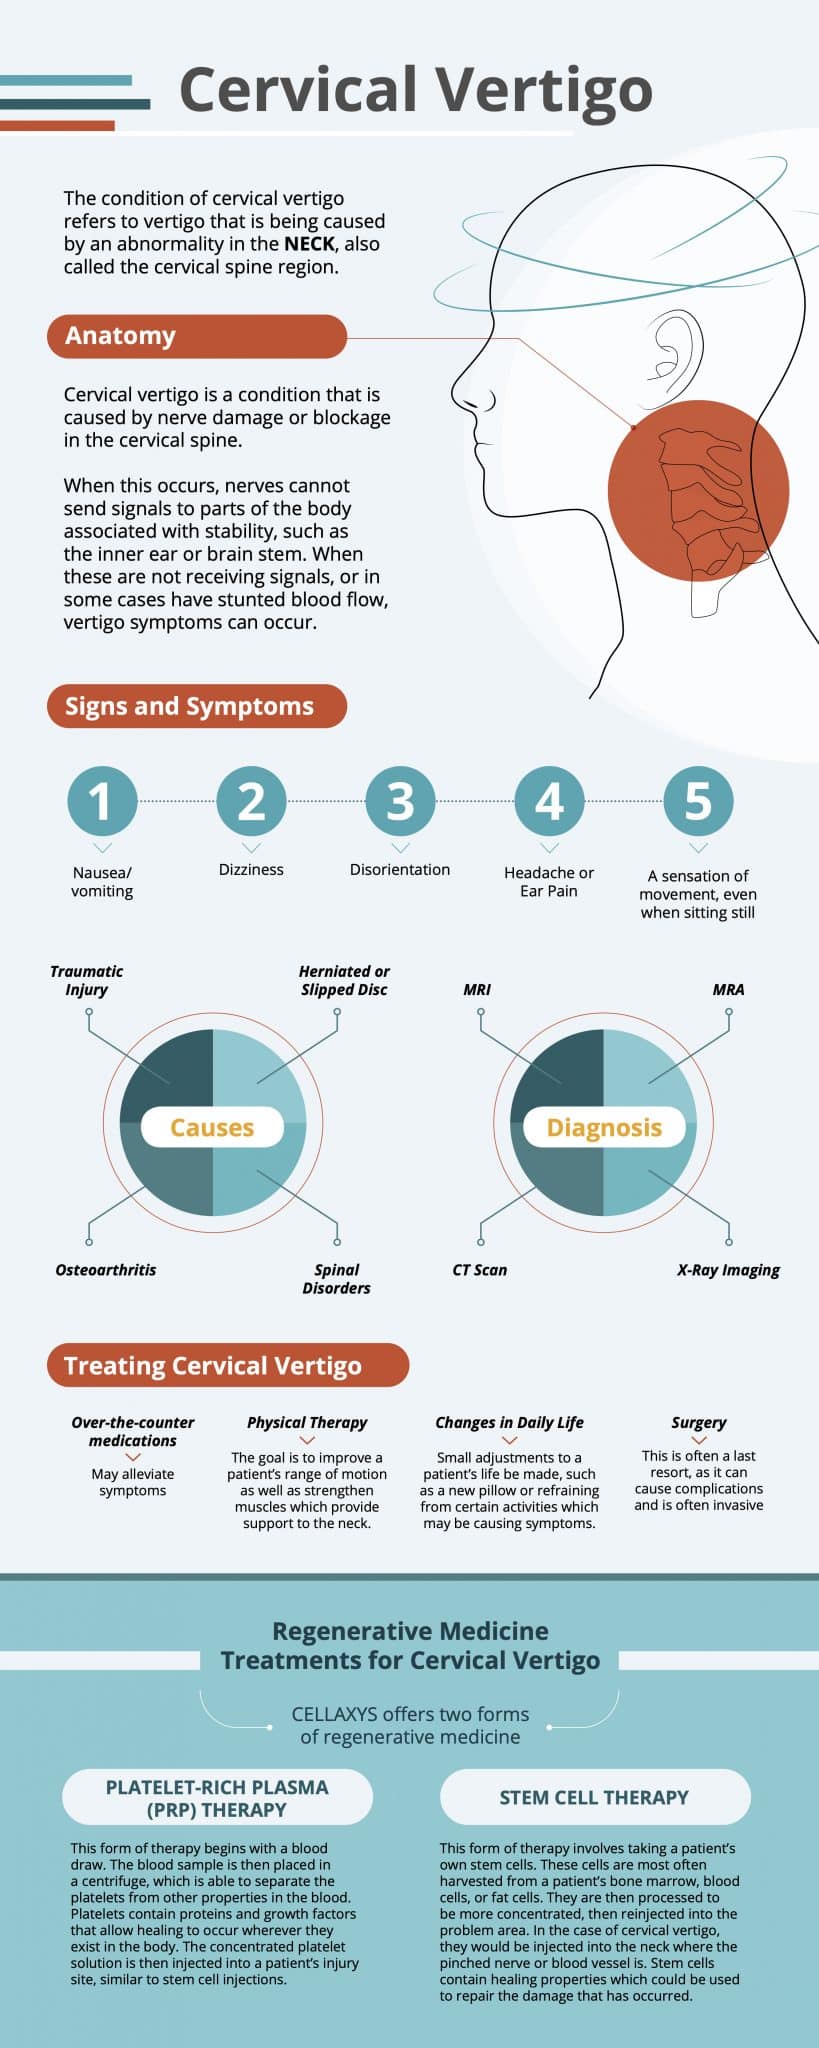 Cervical Vertigo: How A Pinched Nerve Can Cause Chronic Dizziness